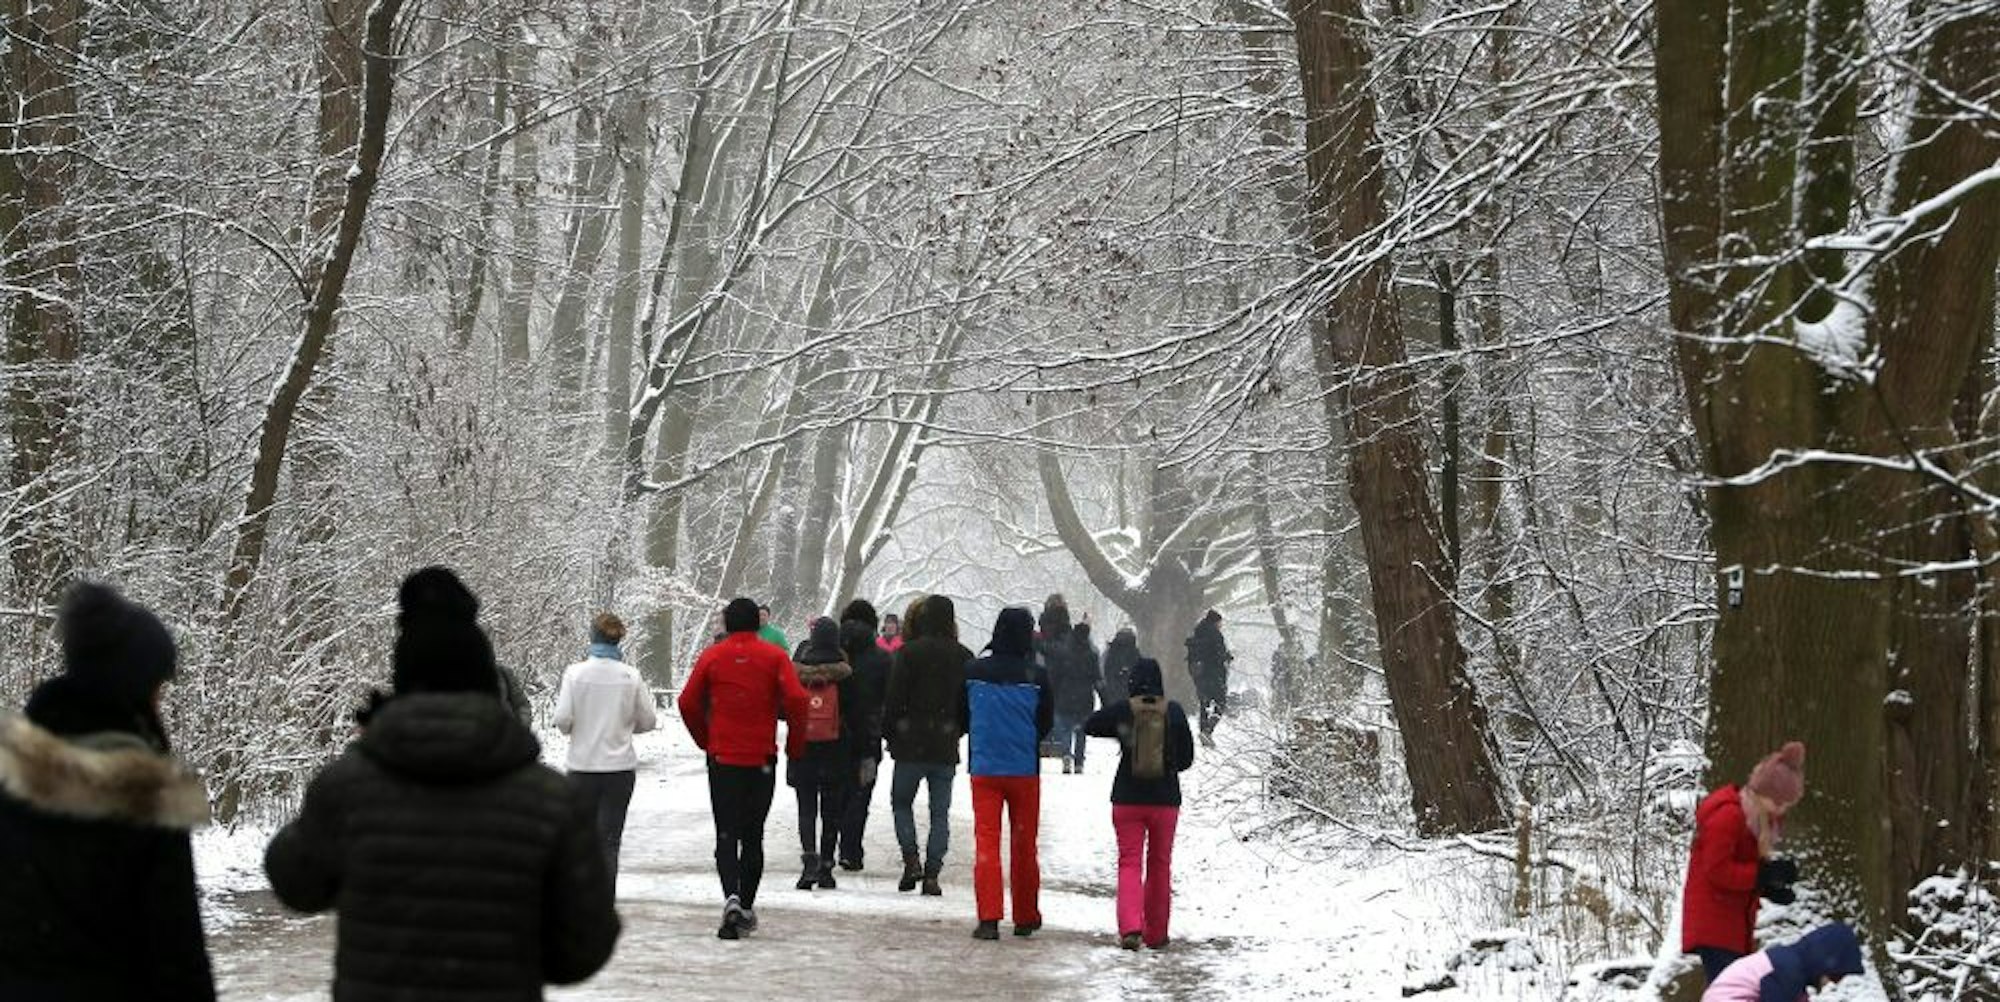 Spaziergänger im schneebedeckten Grüngürtel am Sonntag